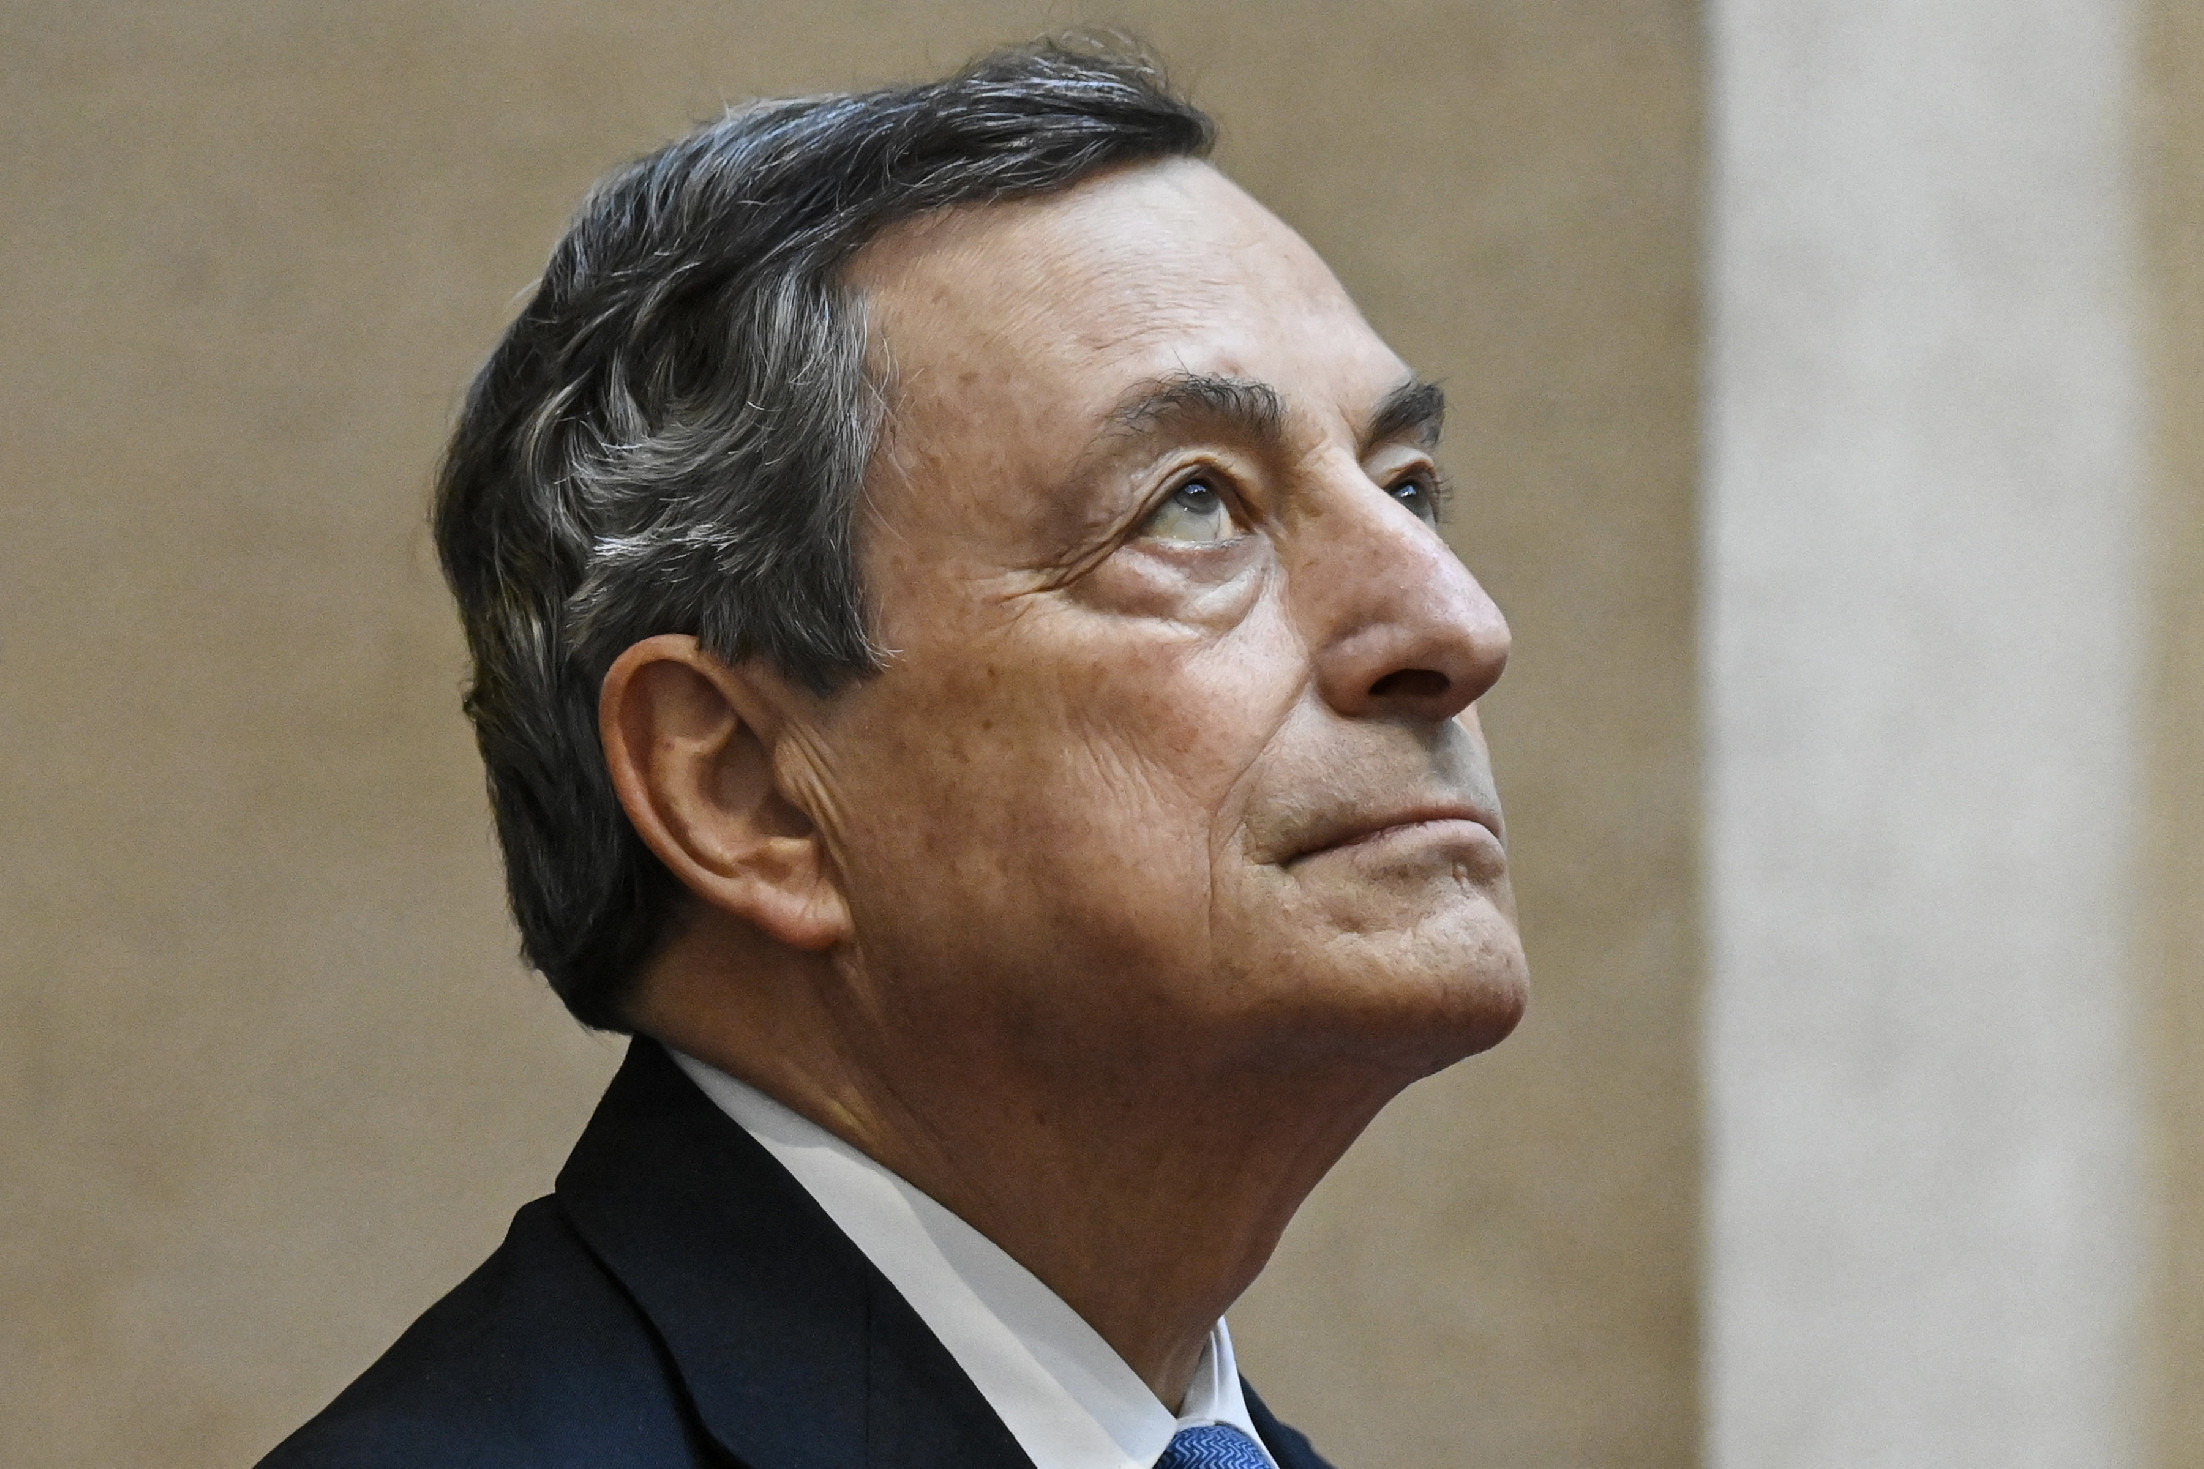 Mario Draghi új bizalmi paktumot kért a parlamenti pártoktól a kormányzás folytatására